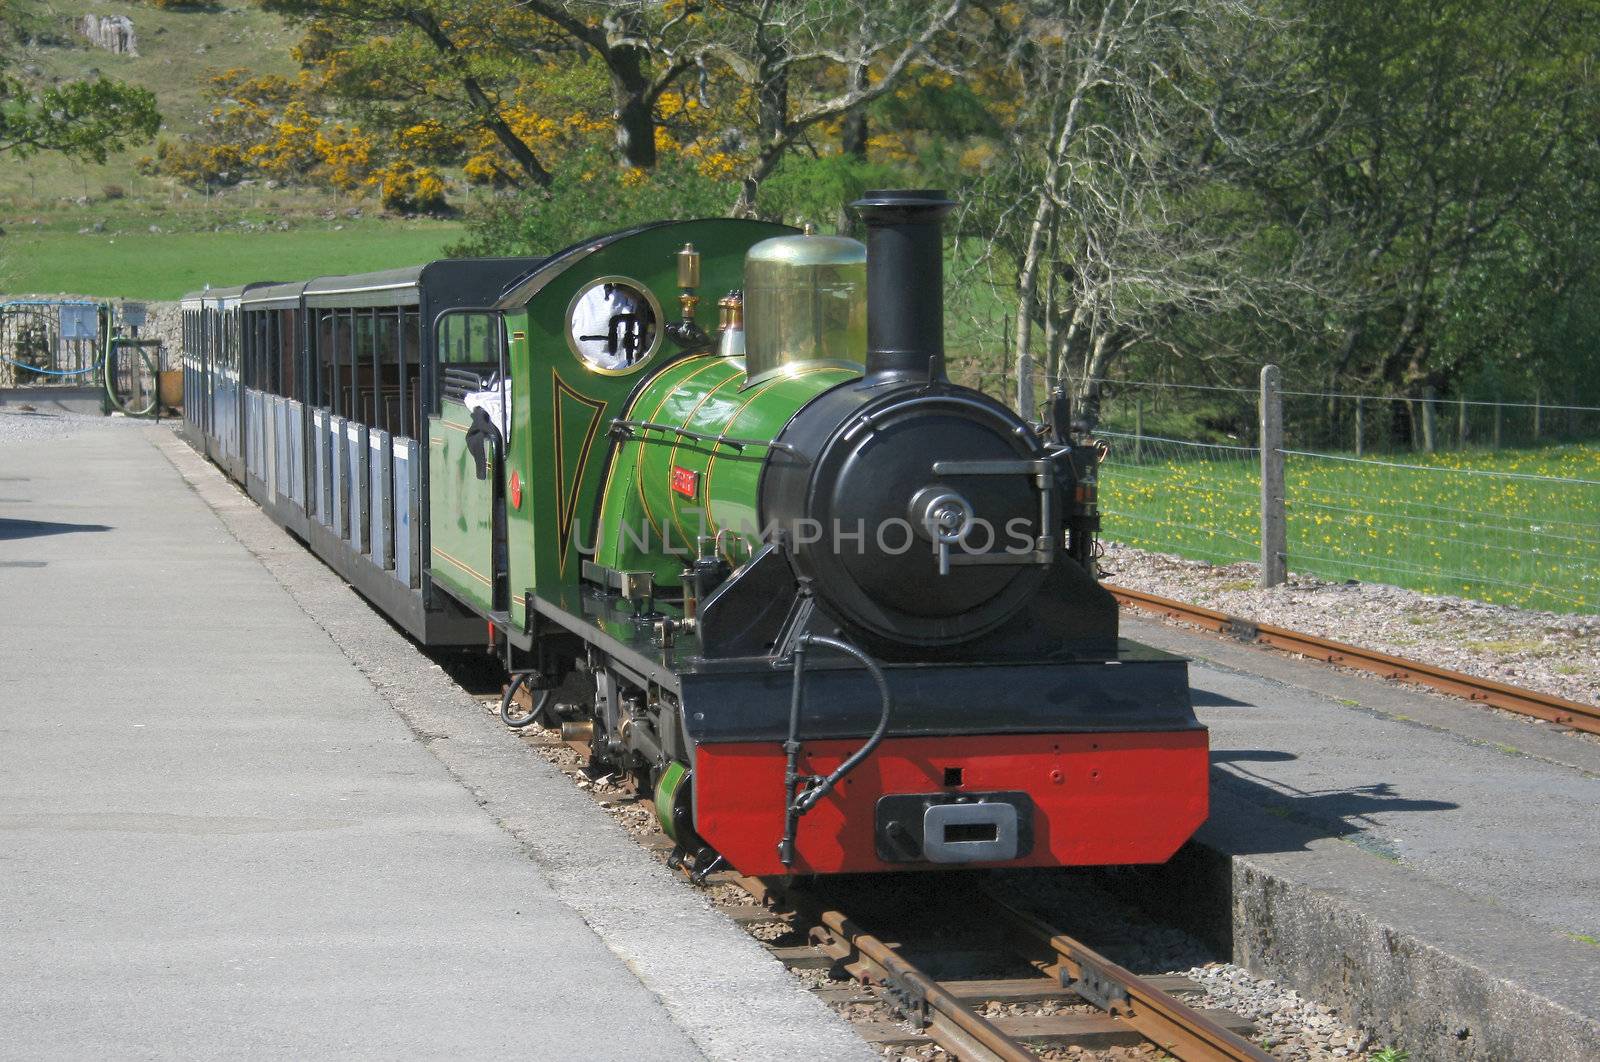 narrow gauge steam train by leafy